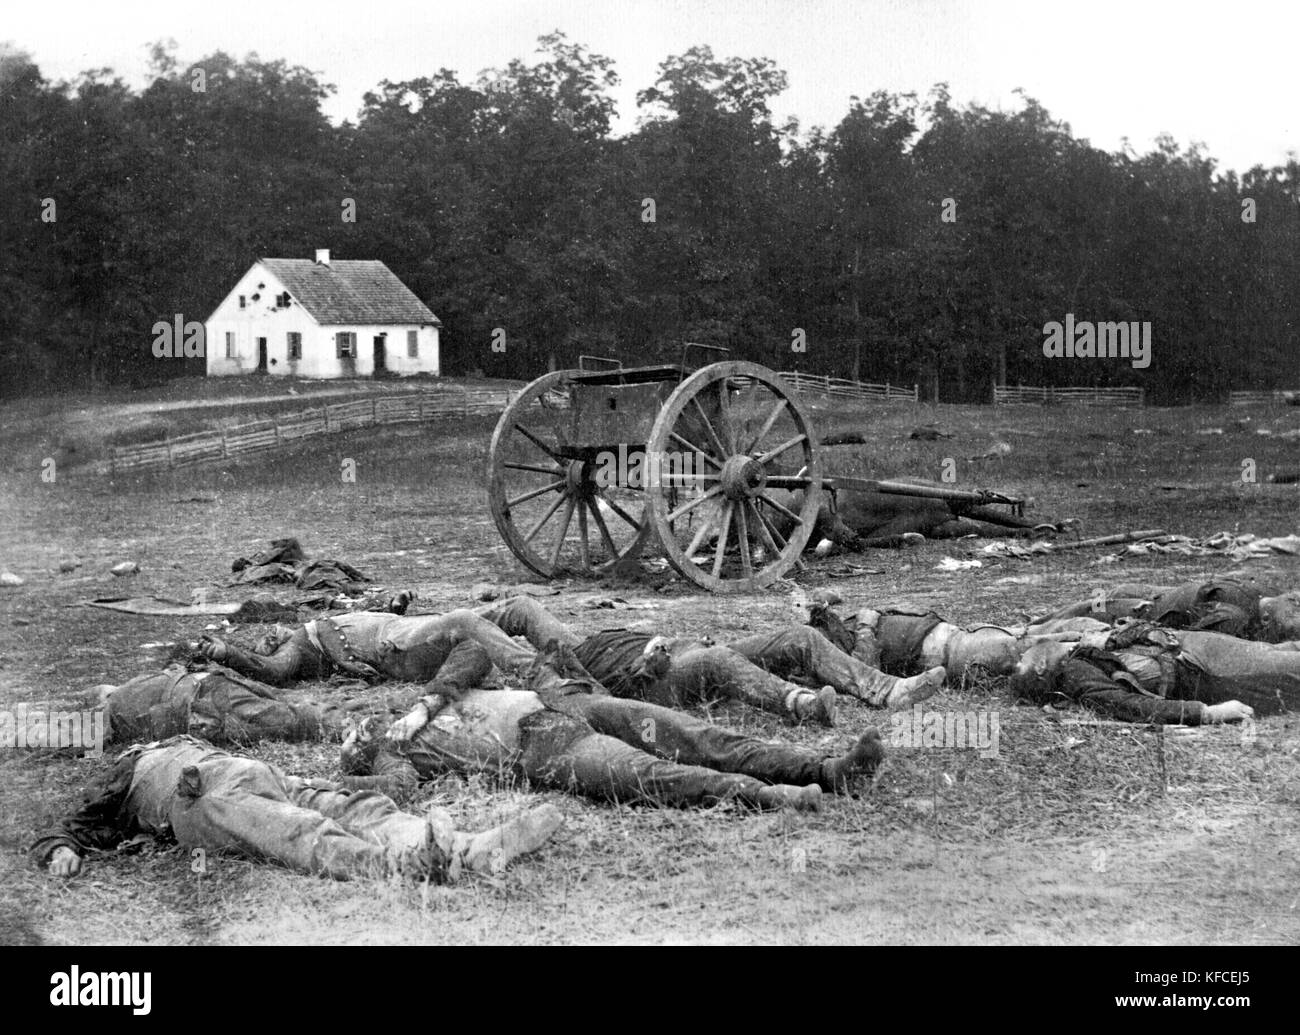 Alexander Gardner iconici fotografia di soldati morti dopo la battaglia di Antietam nel 1862, Sharpsburg, Maryland, Stati Uniti d'America Foto Stock